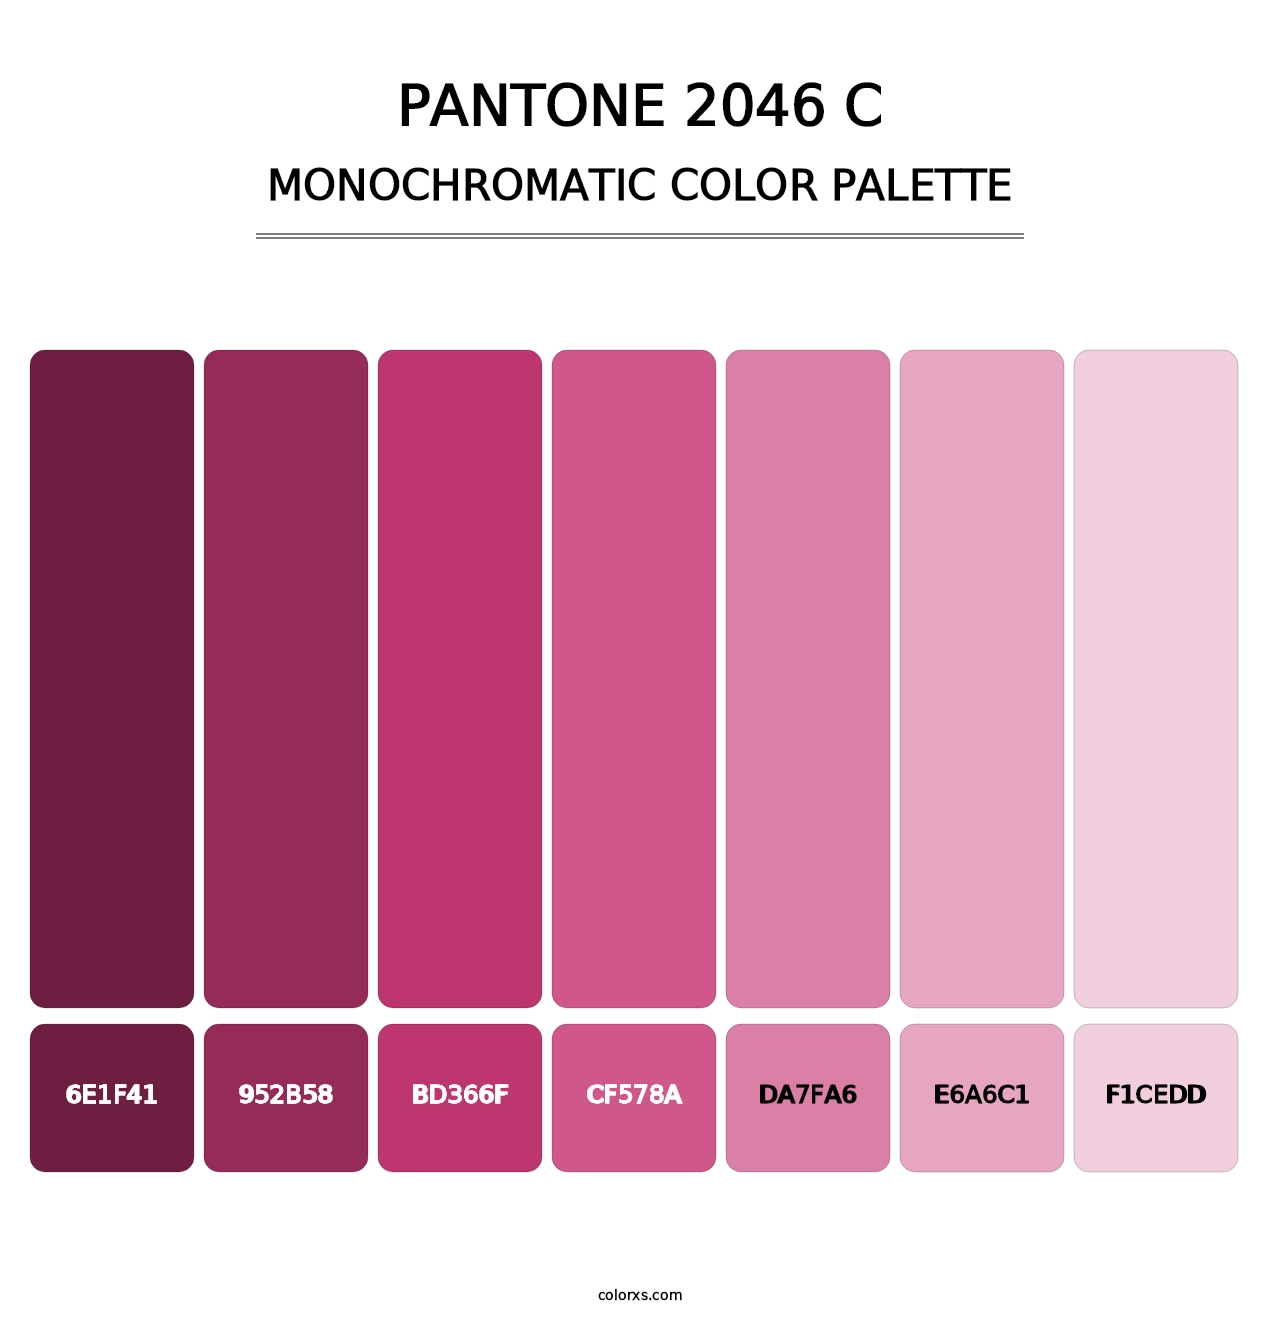 PANTONE 2046 C - Monochromatic Color Palette